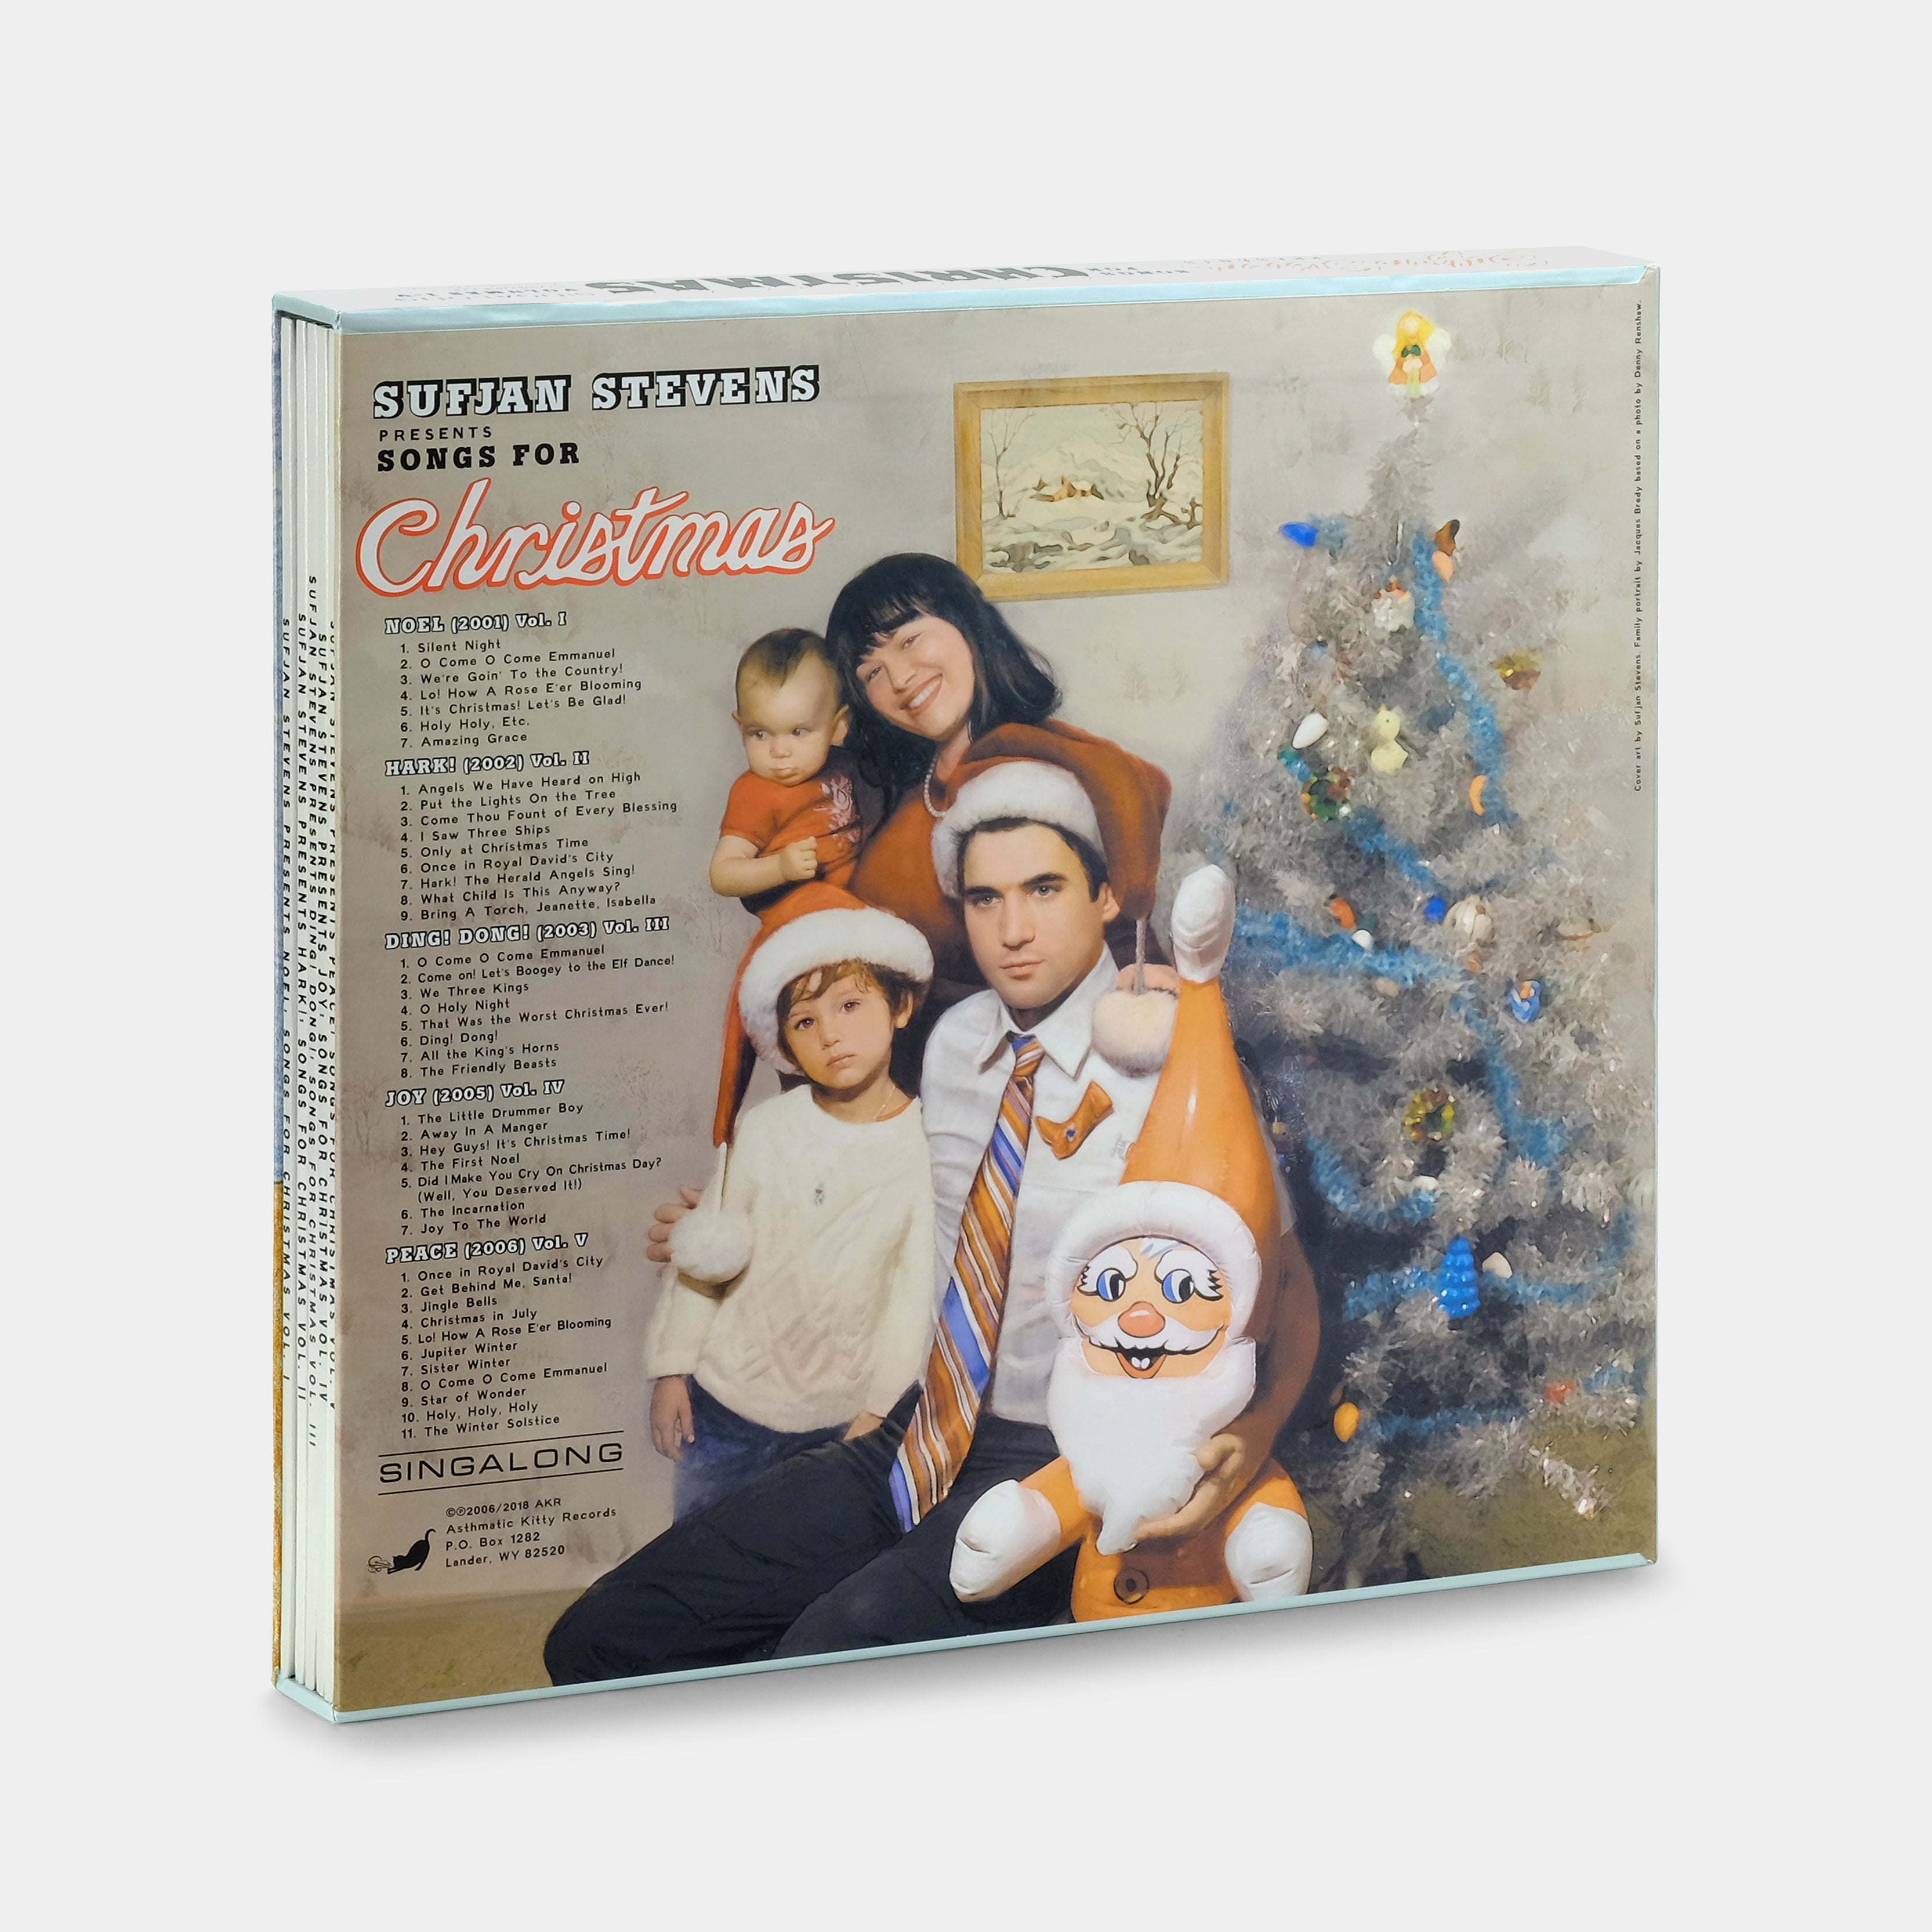 Sufjan Stevens - Songs for Christmas 5xLP Vinyl Record